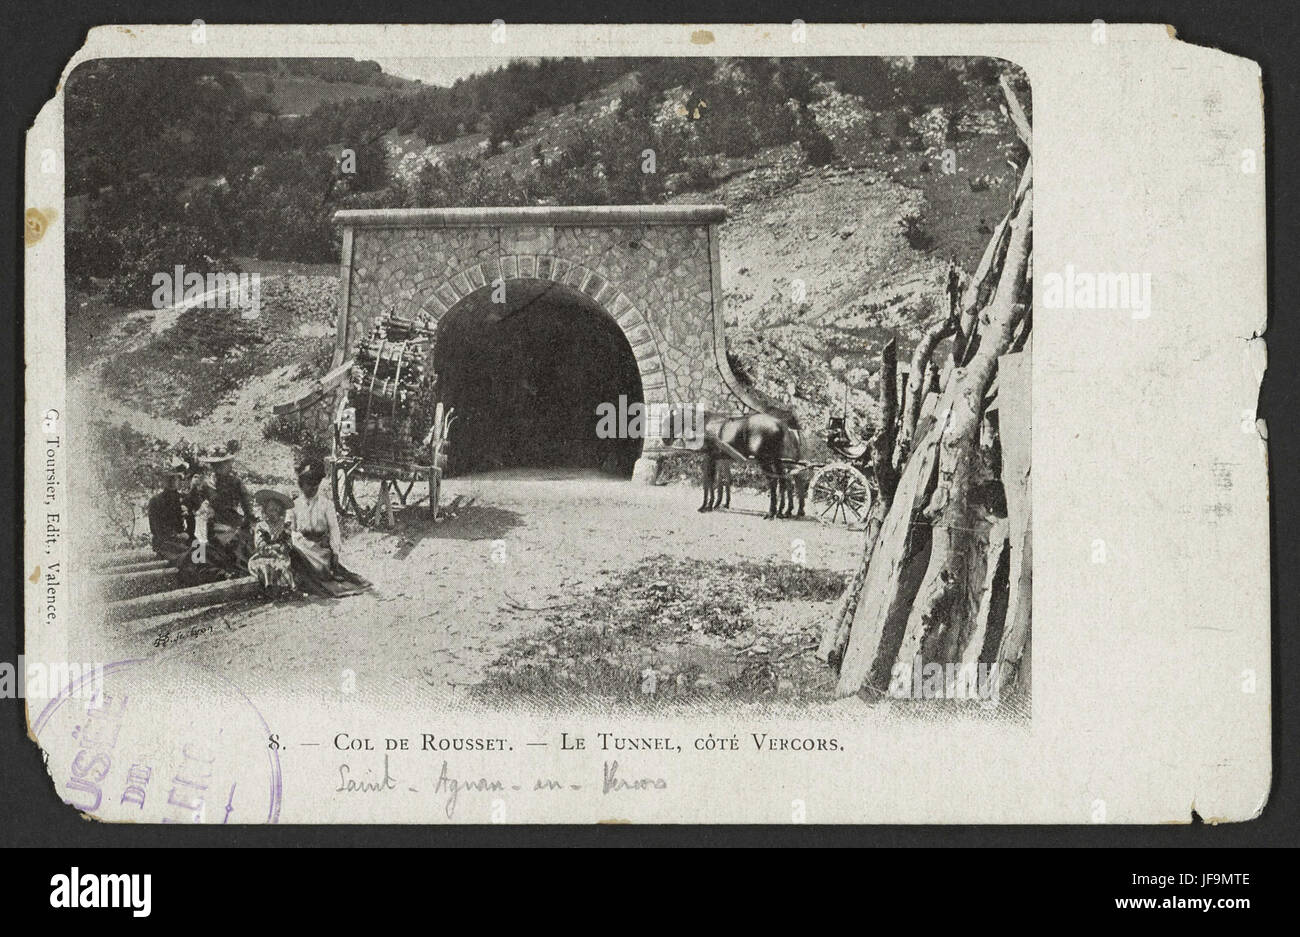 Col de Rousset -Le Tunnel, côté Vercors 34408178912 o Stock Photo